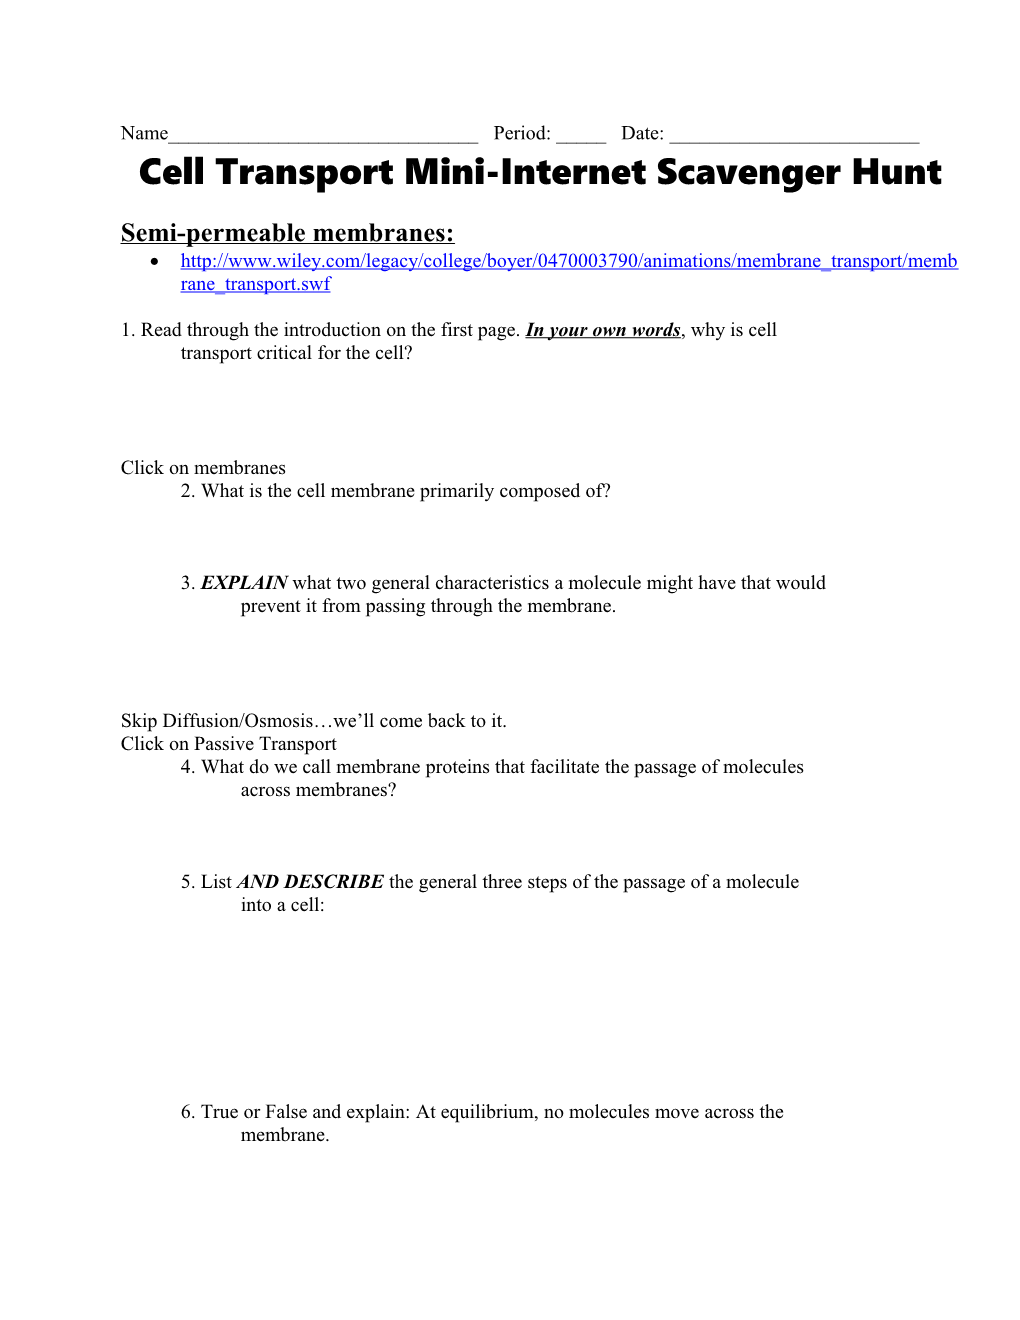 Cell Transport Mini-Internet Scavenger Hunt